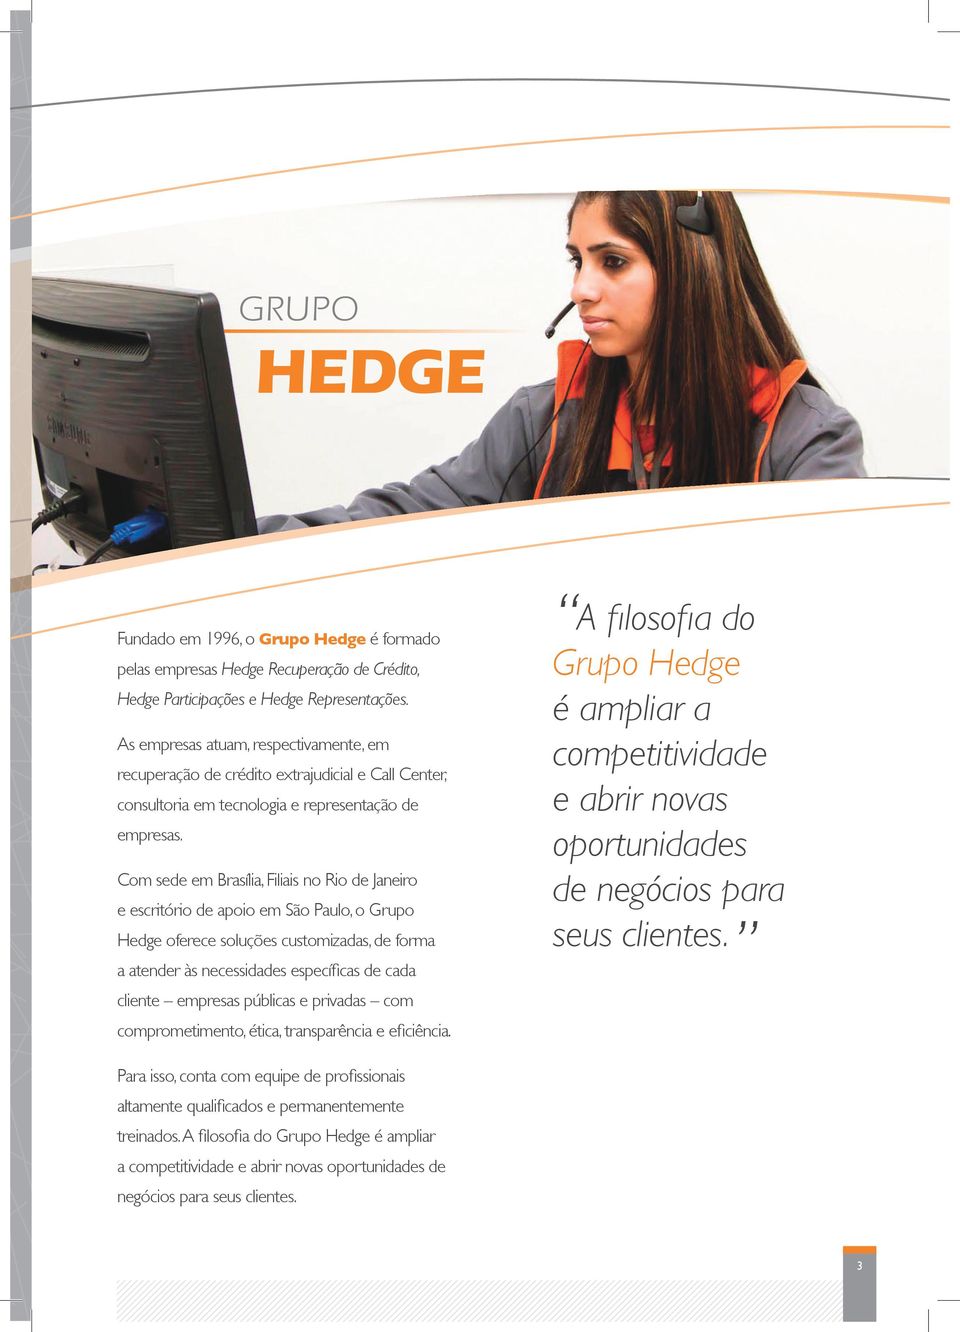 Com sede em Brasília, Filiais no Rio de Janeiro e escritório de apoio em São Paulo, o Grupo Hedge oferece soluções customizadas, de forma a atender às necessidades específicas de cada cliente